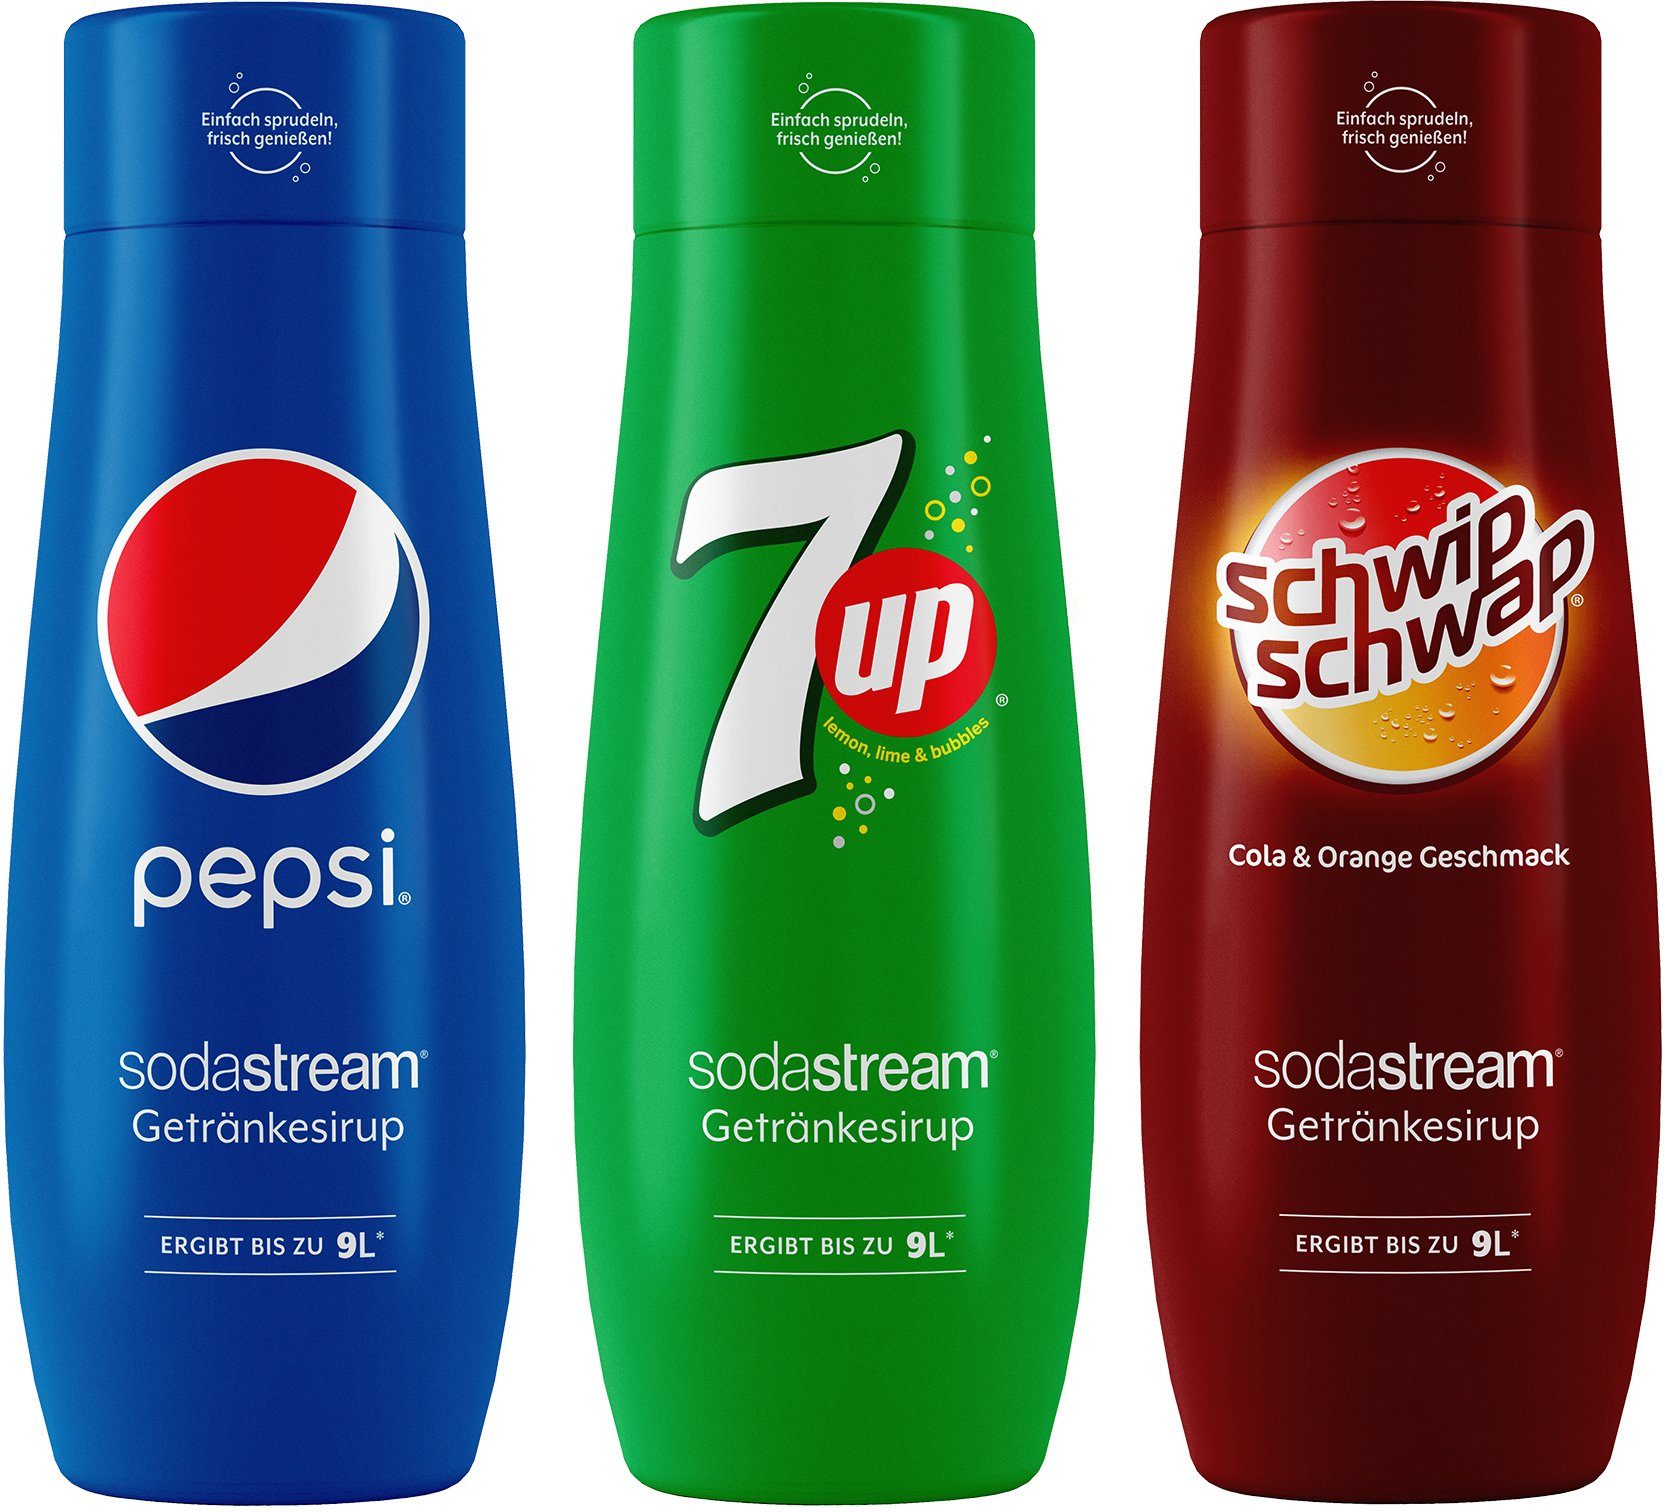 SodaStream Getränke-Sirup, 3 Stück, Pepsi,7UP+SchwipSchwap,440ml für je 9L  Fertiggetränk